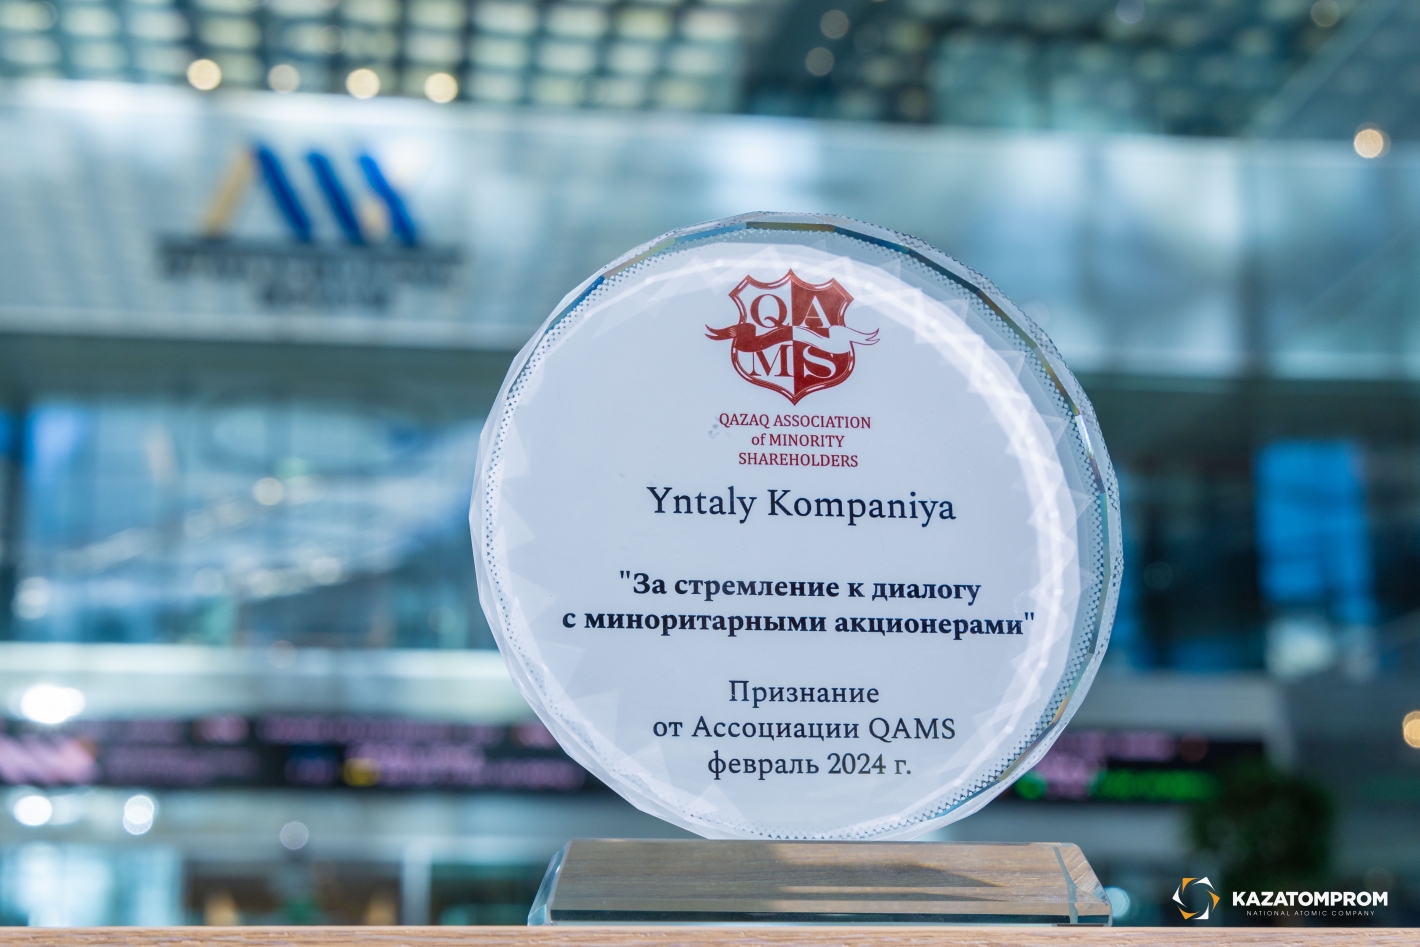 Kazatomprom won an award from QAMS